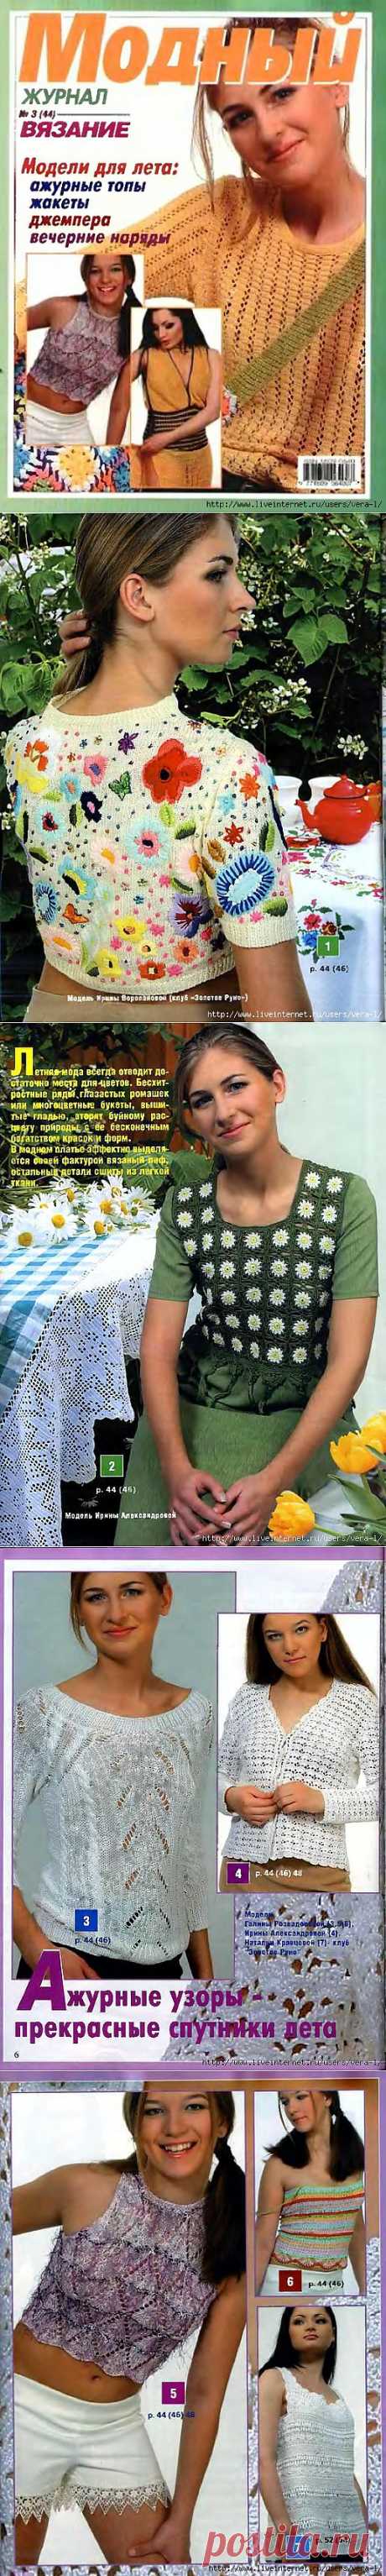 Модный журнал. Вязание 2006-3(44).